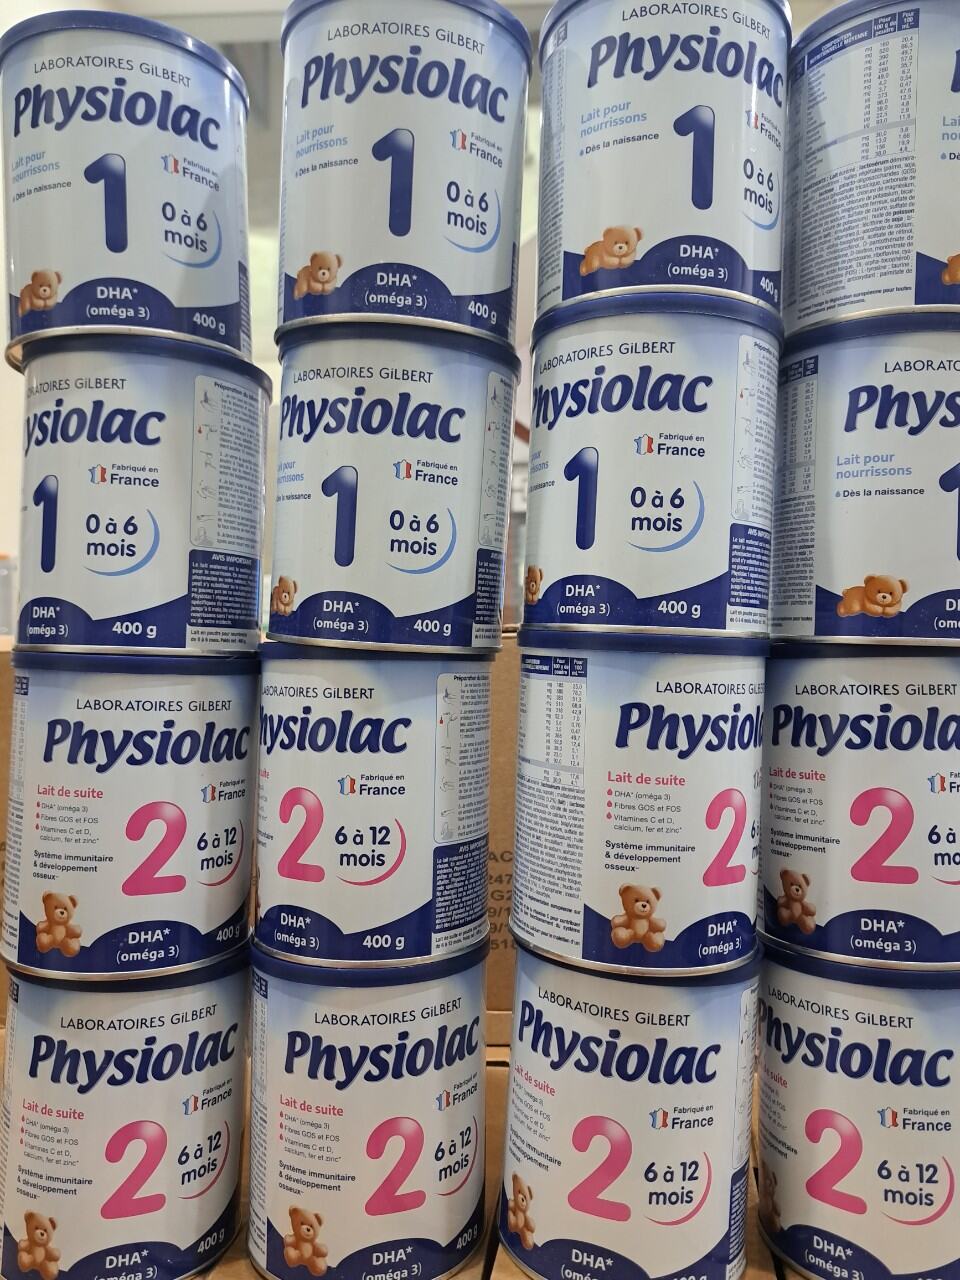 Sữa physiolac 400g, date 9 2023 - ảnh sản phẩm 1